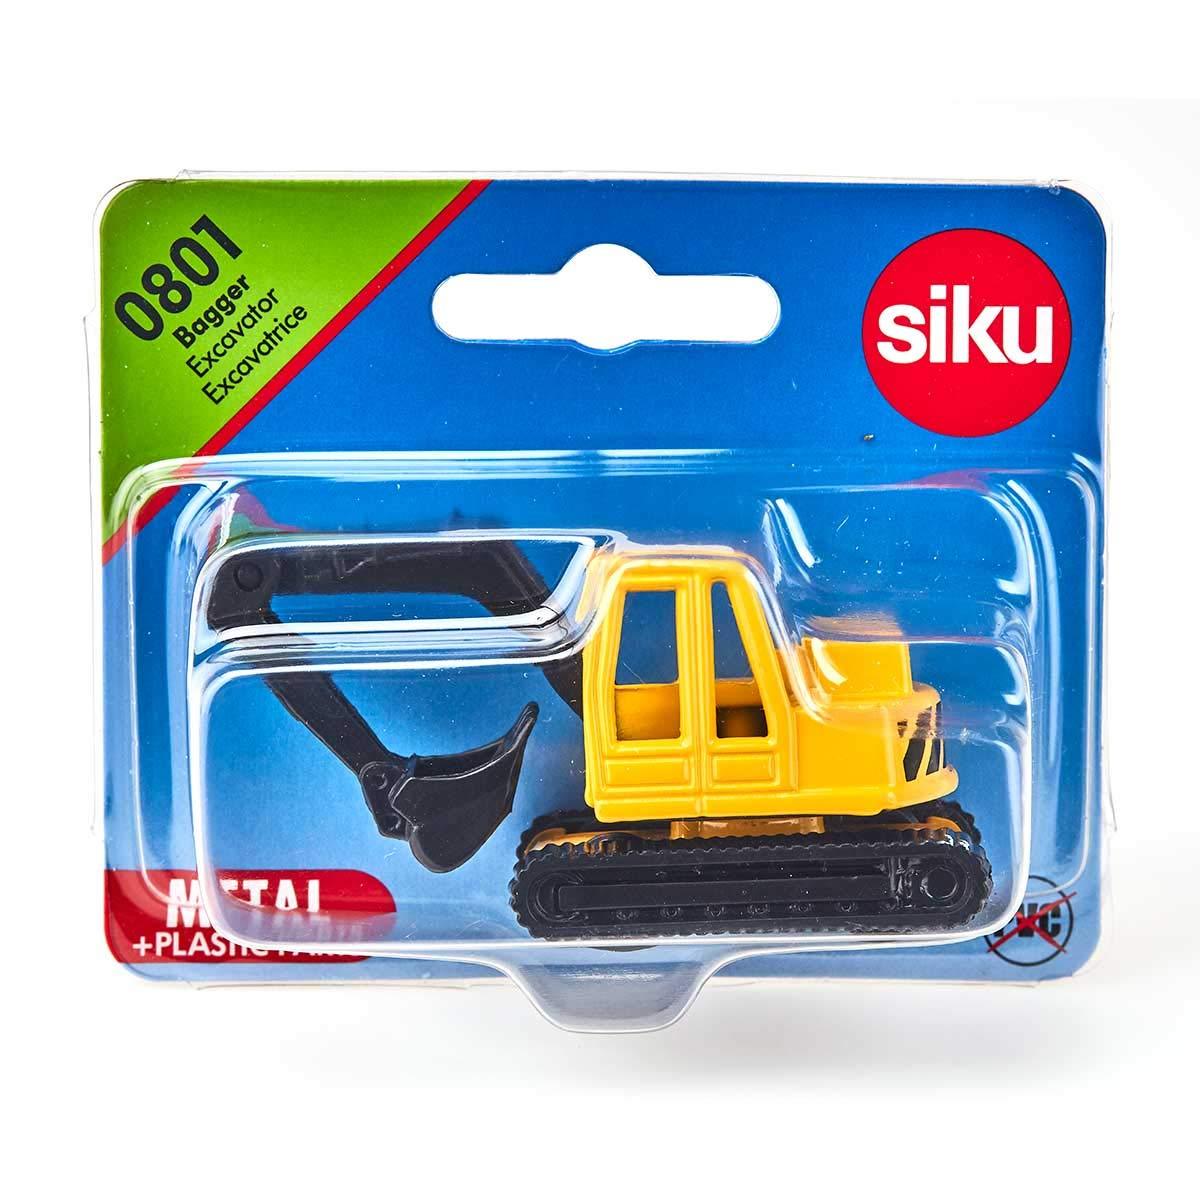 Siku 0801 Excavator